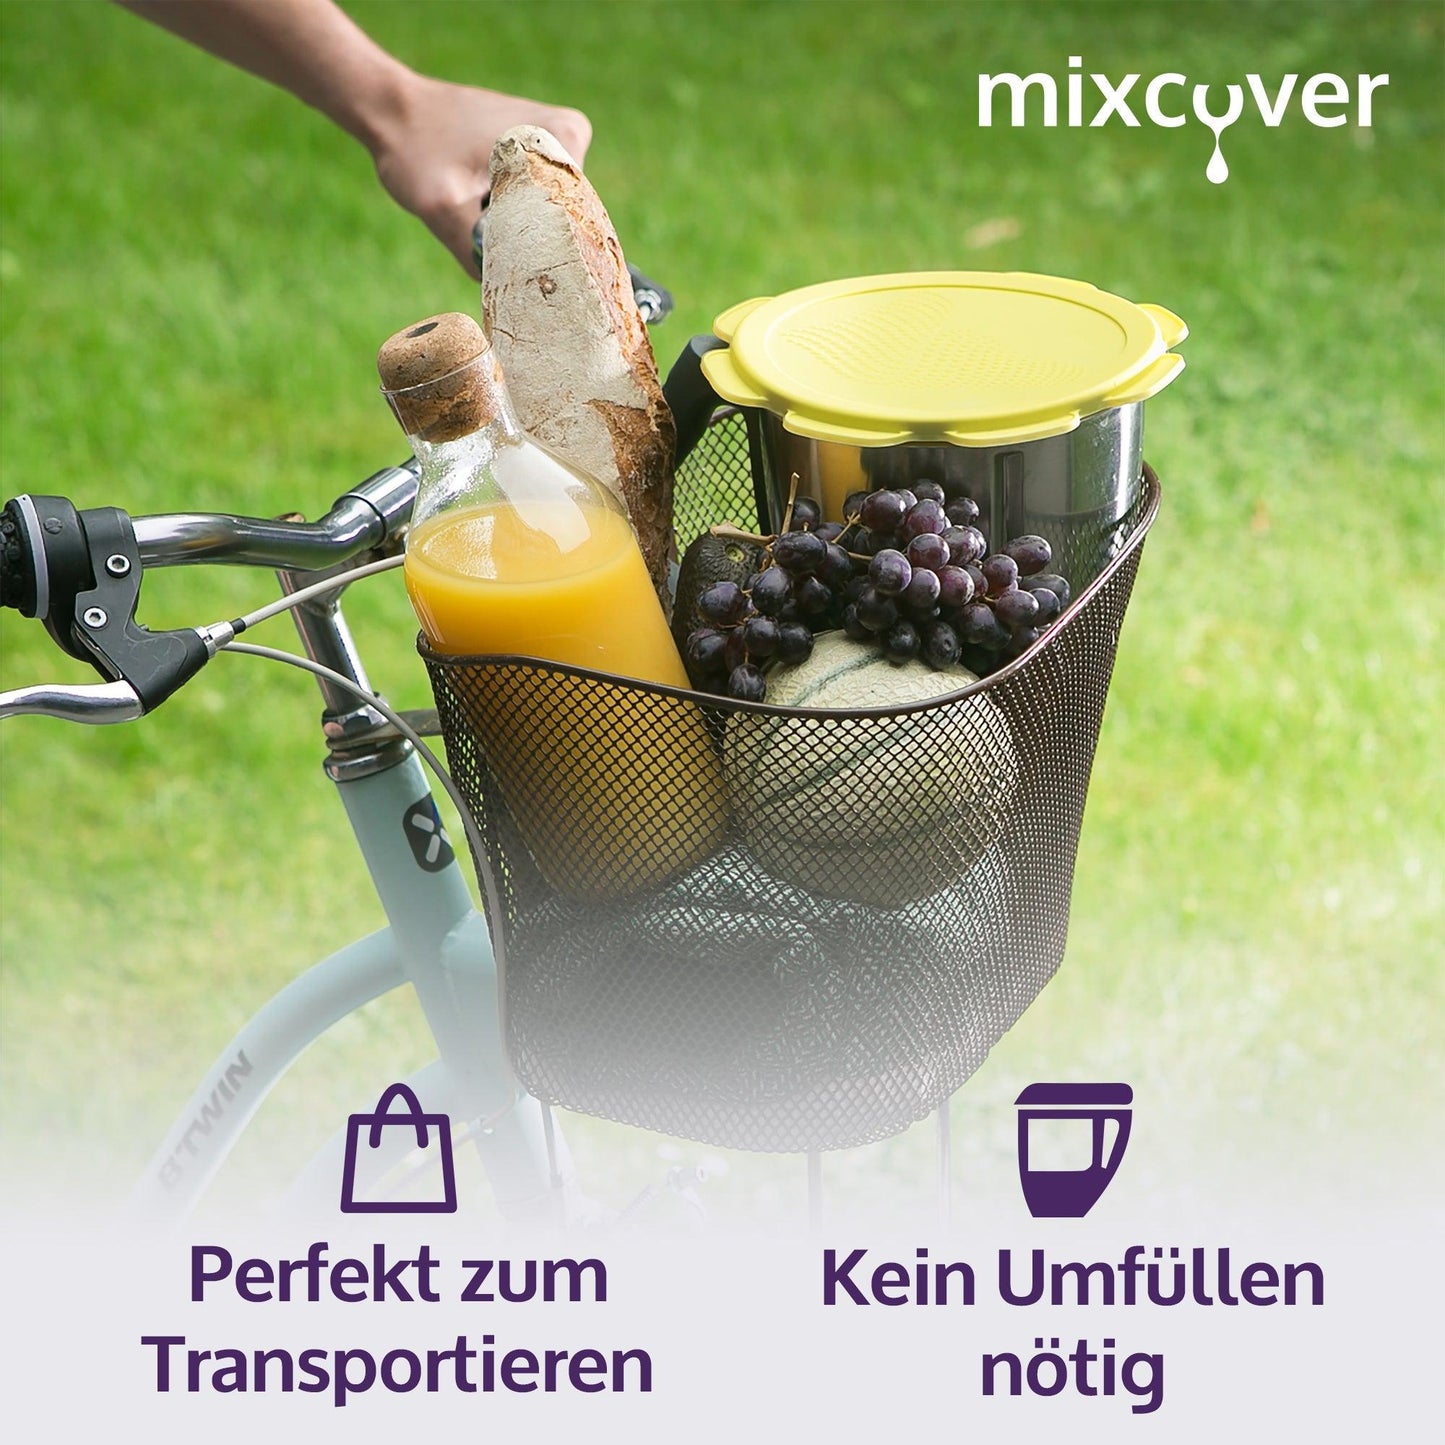 mixcover Silikon Deckel wasser- & geruchsdicht für Thermomix TM5 TM6 Friend Gelb - Mixcover - Mixcover